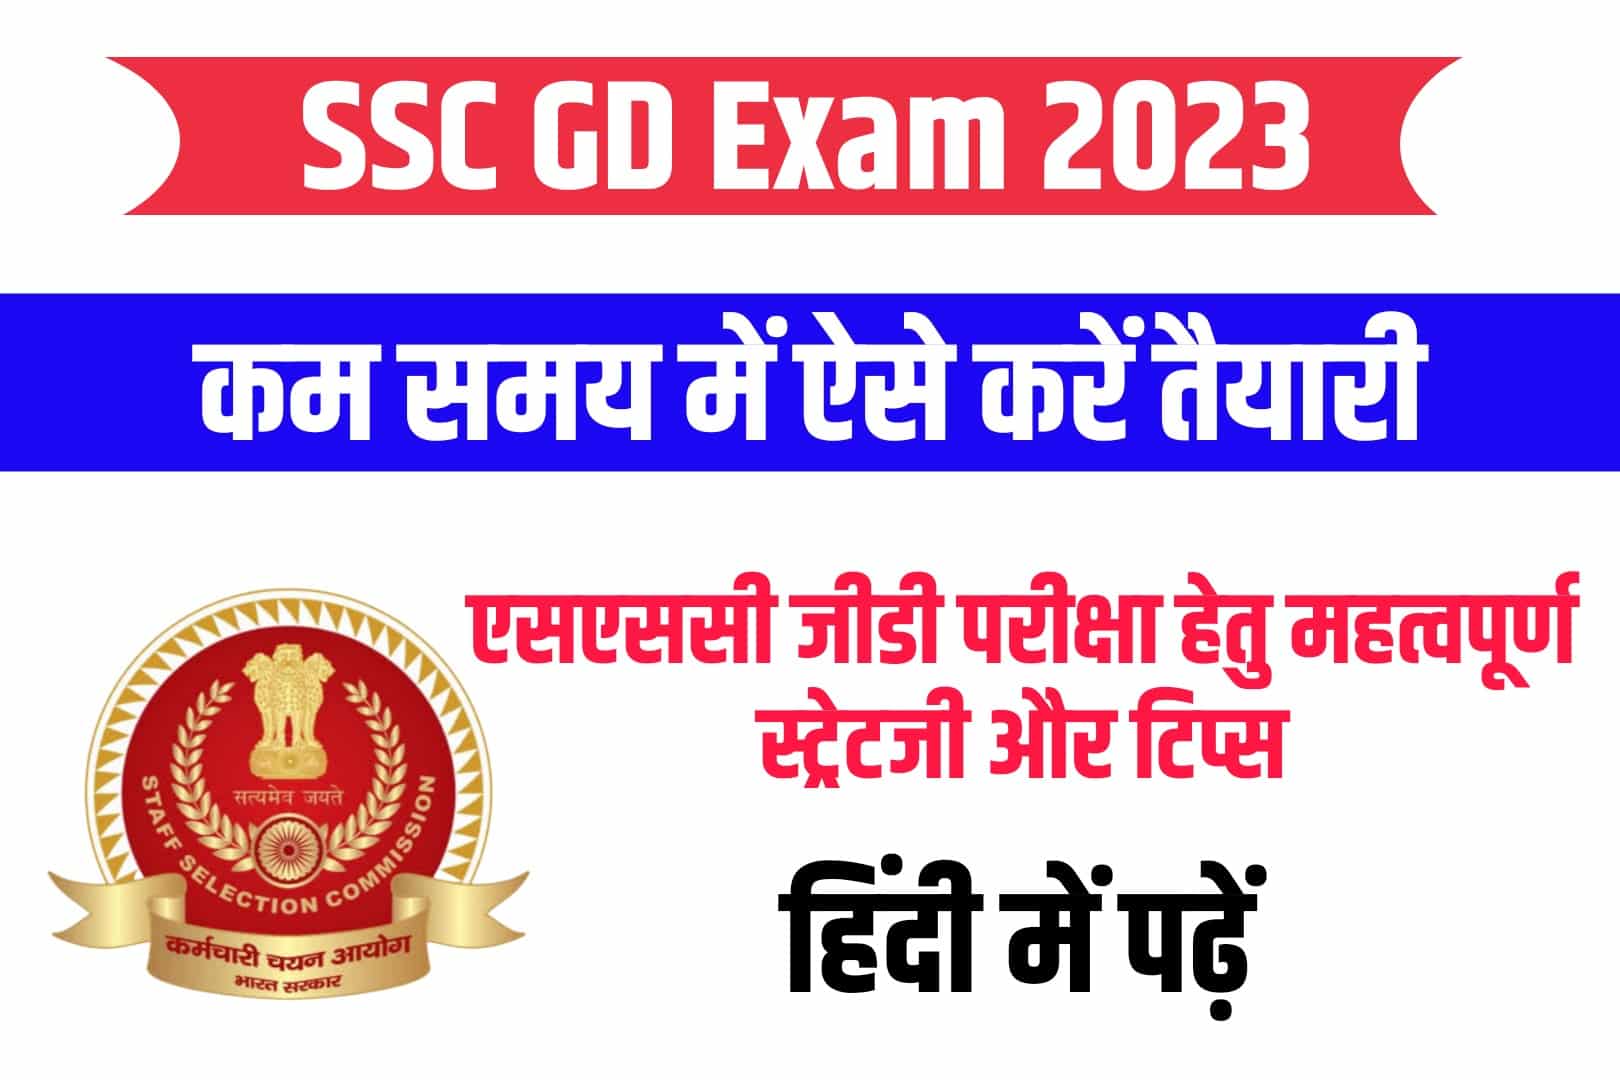 SSC GD Exam 2023 Preparation Tips in Hindi : कम समय में ऐसे करें एसएससी जीडी परीक्षा की बेहतर तैयारी